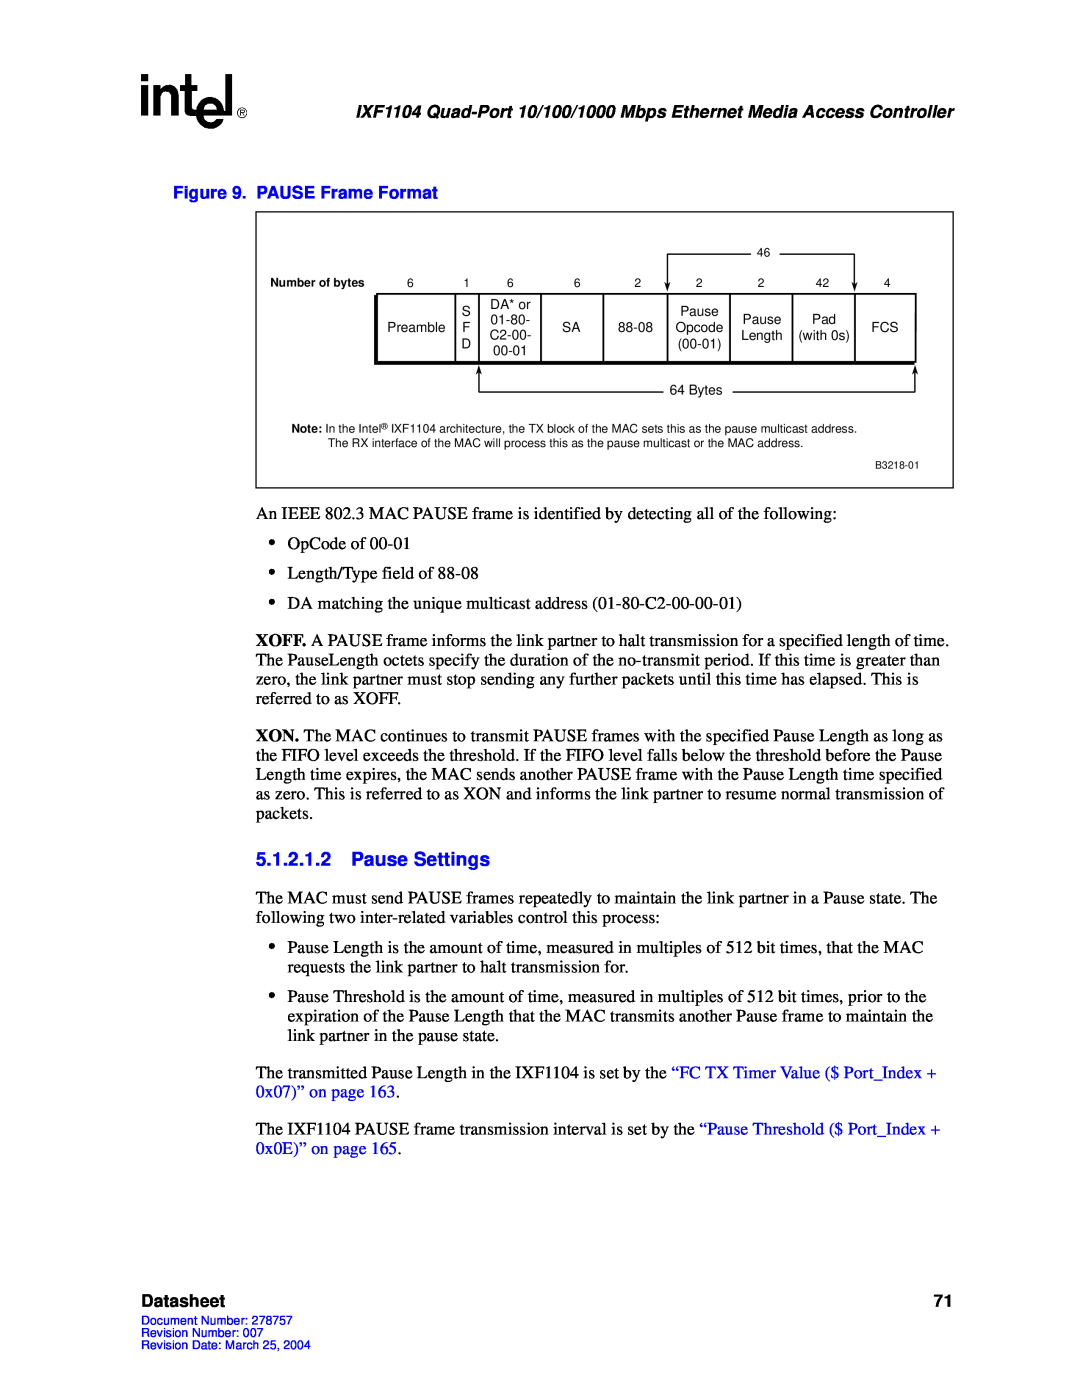 Intel IXF1104 manual 5.1.2.1.2Pause Settings, Datasheet 